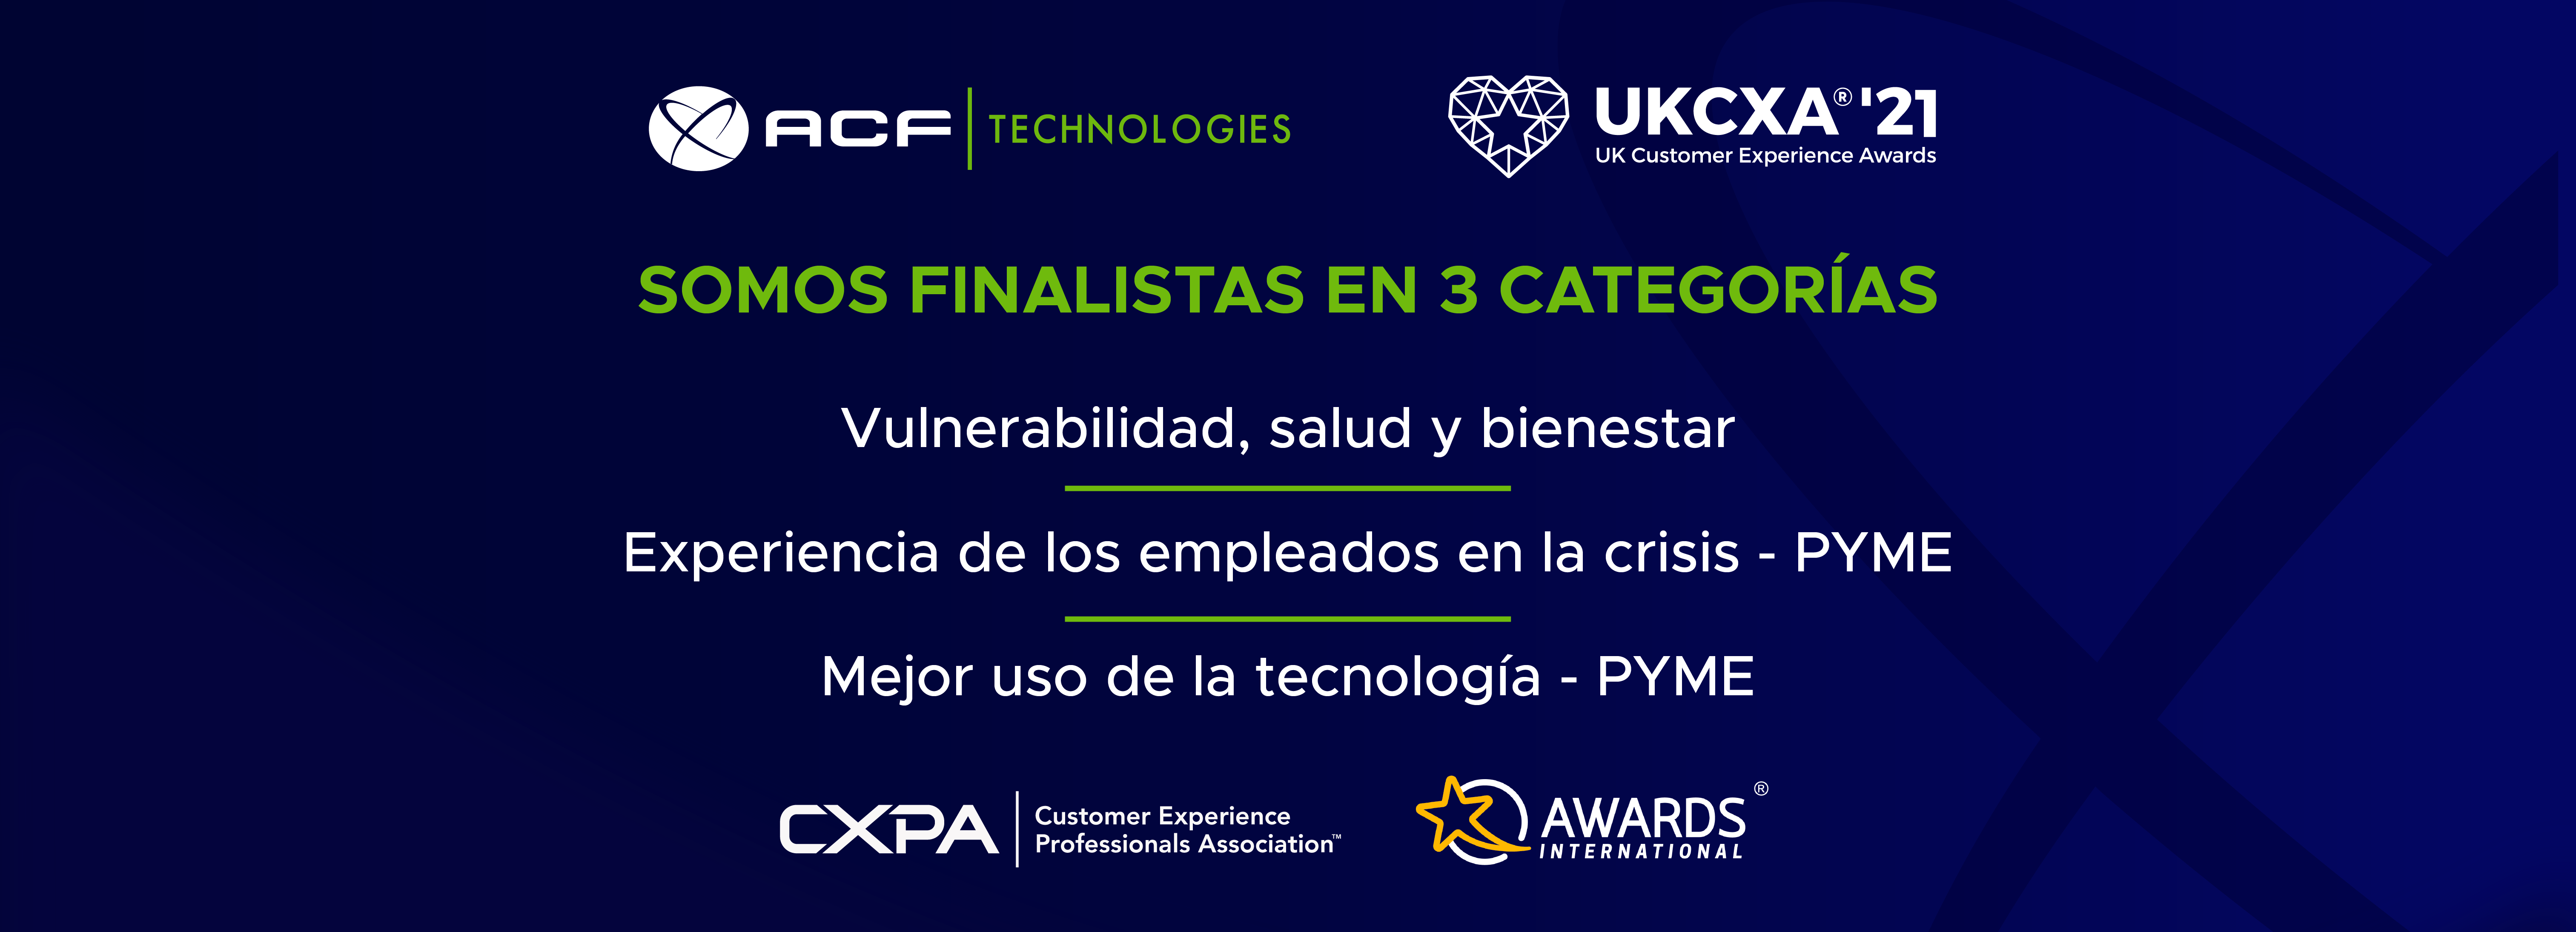 ACF Technologies finalista en 3 categorias de UKCXA 2021- Vulnerabilidad, salud y bienestar, Experiencia de los empleados en la crisis, Mejor uso de la tecnología